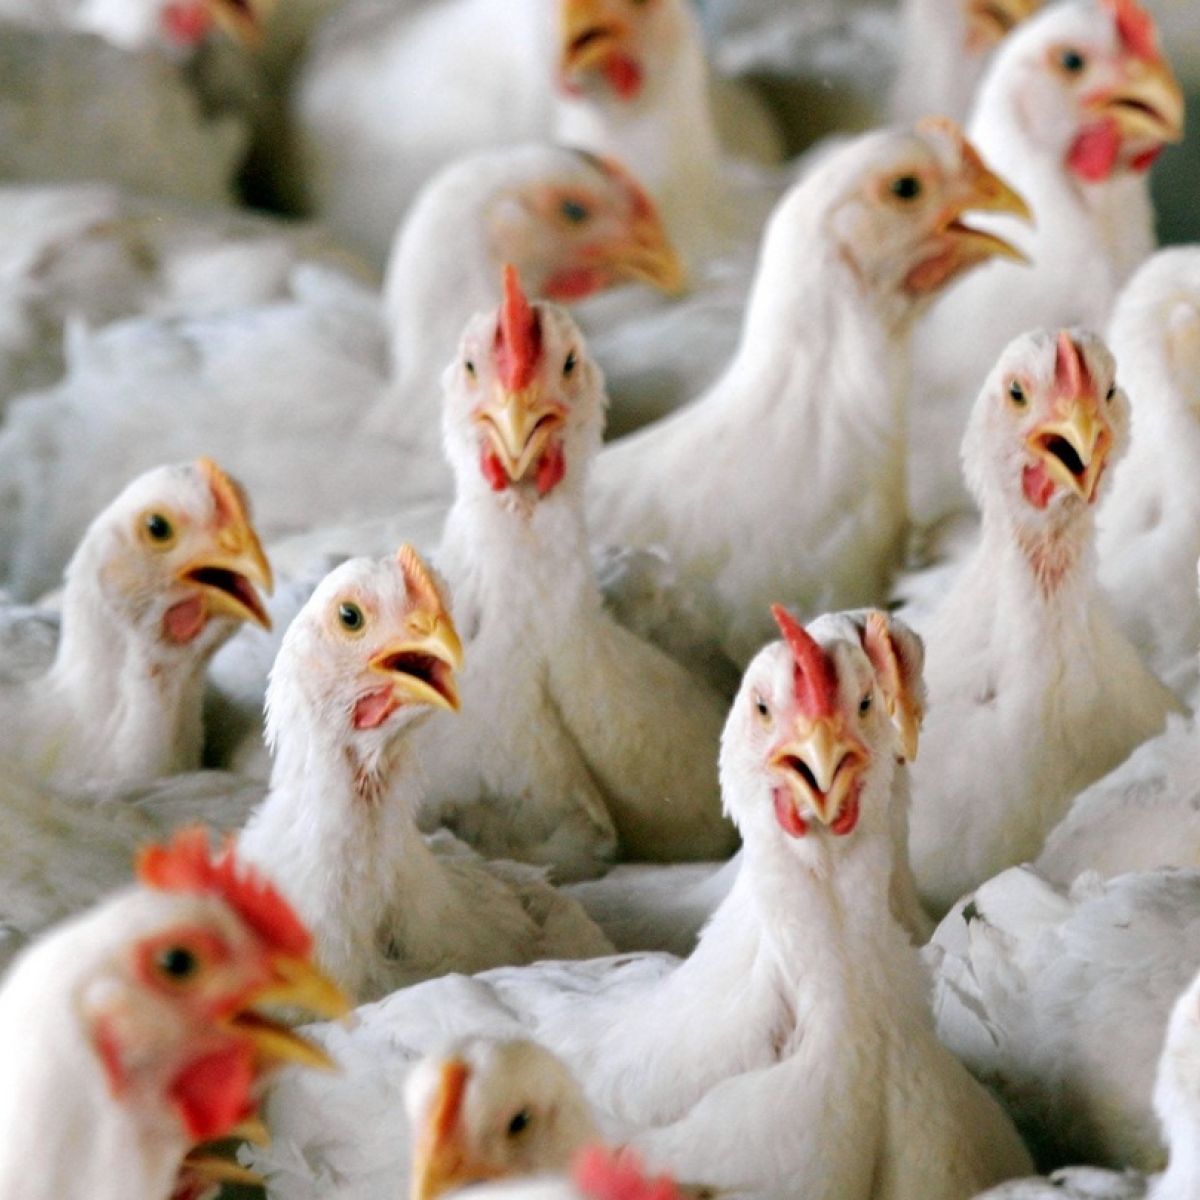 Bird Flu Outbreak Confirmed In Co Monaghan Poultry Flock